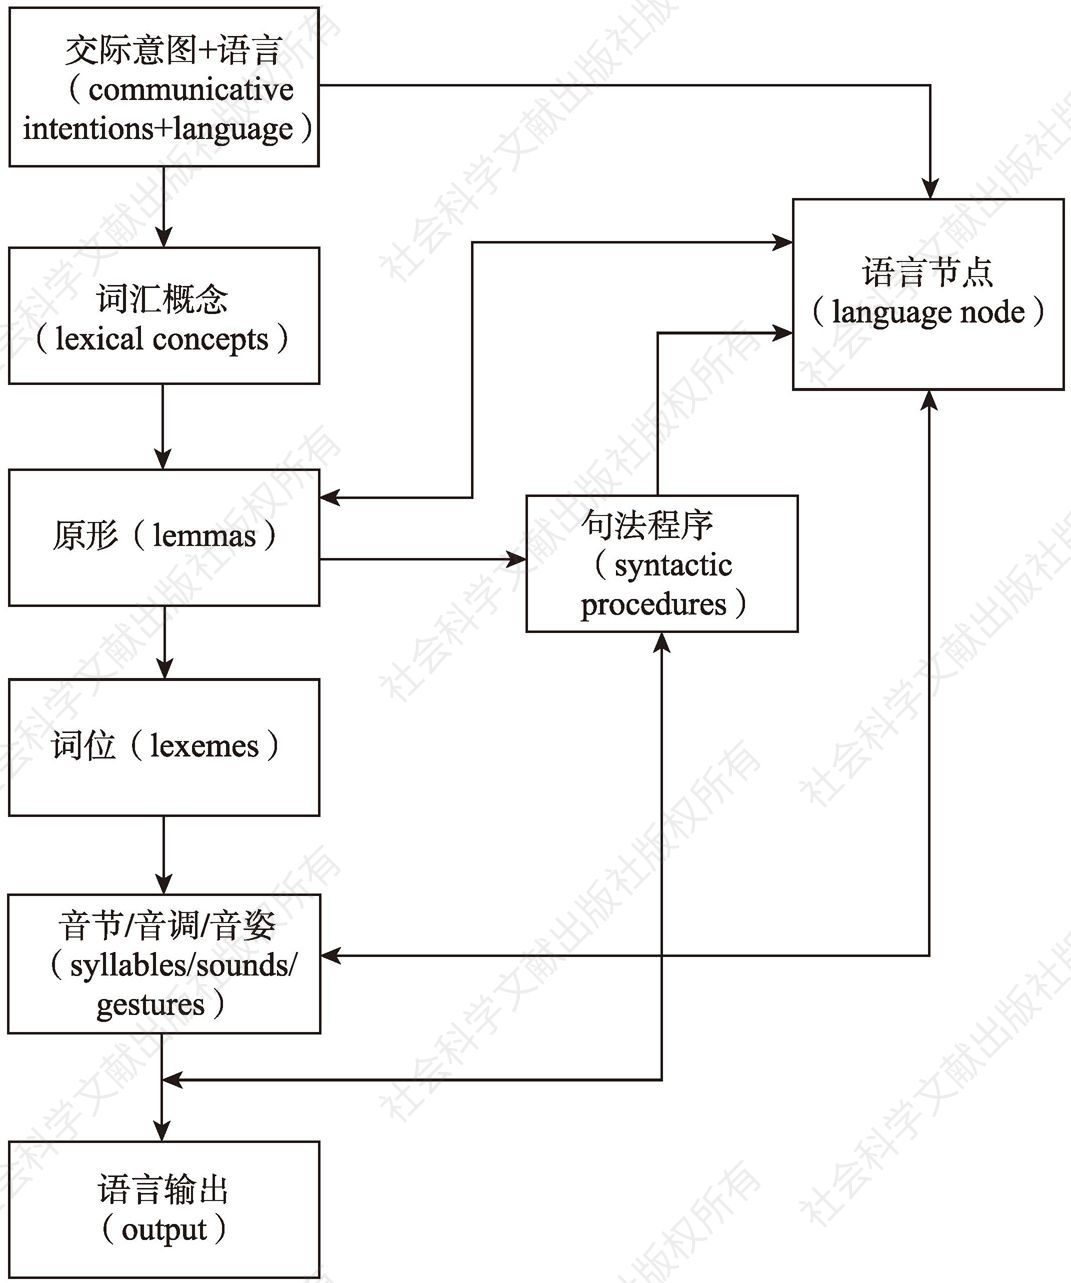 图2-2 双语产出模型